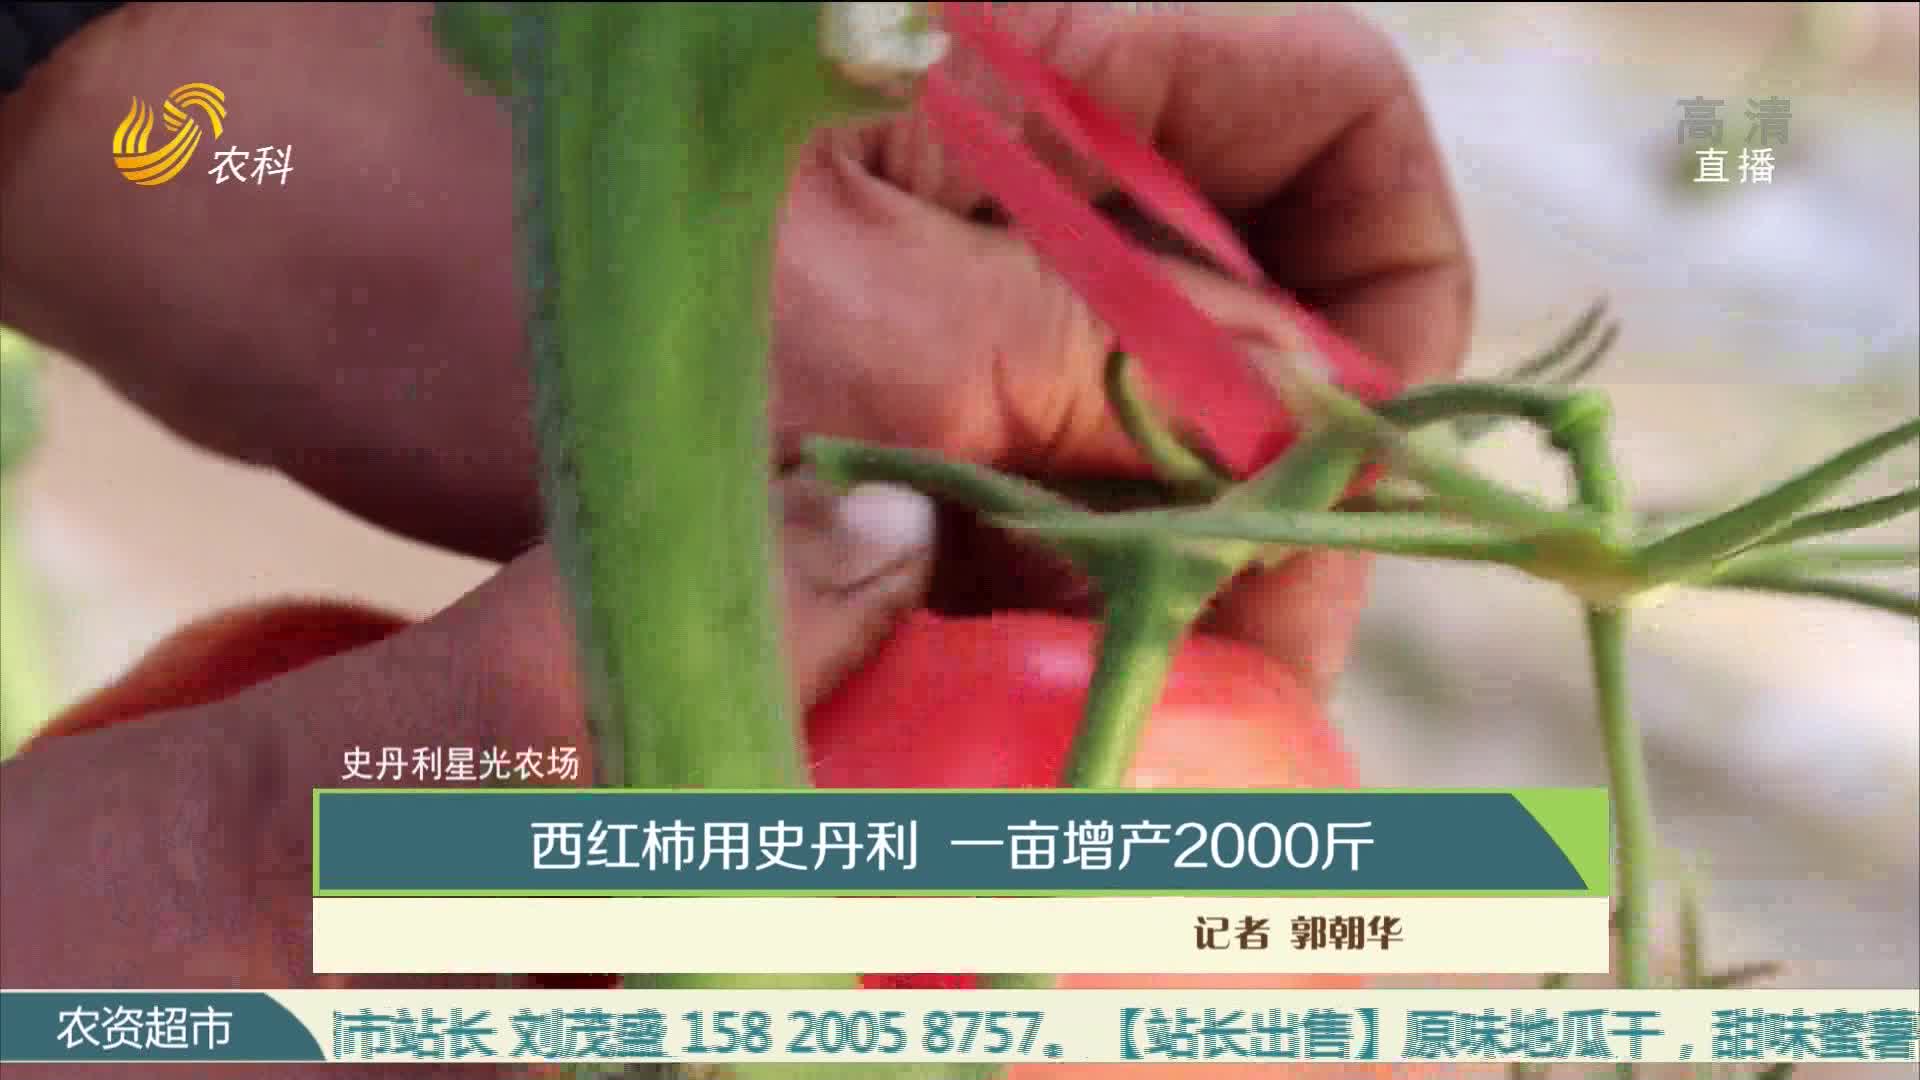 【史丹利星光农场】西红柿用史丹利 一亩增产2000斤